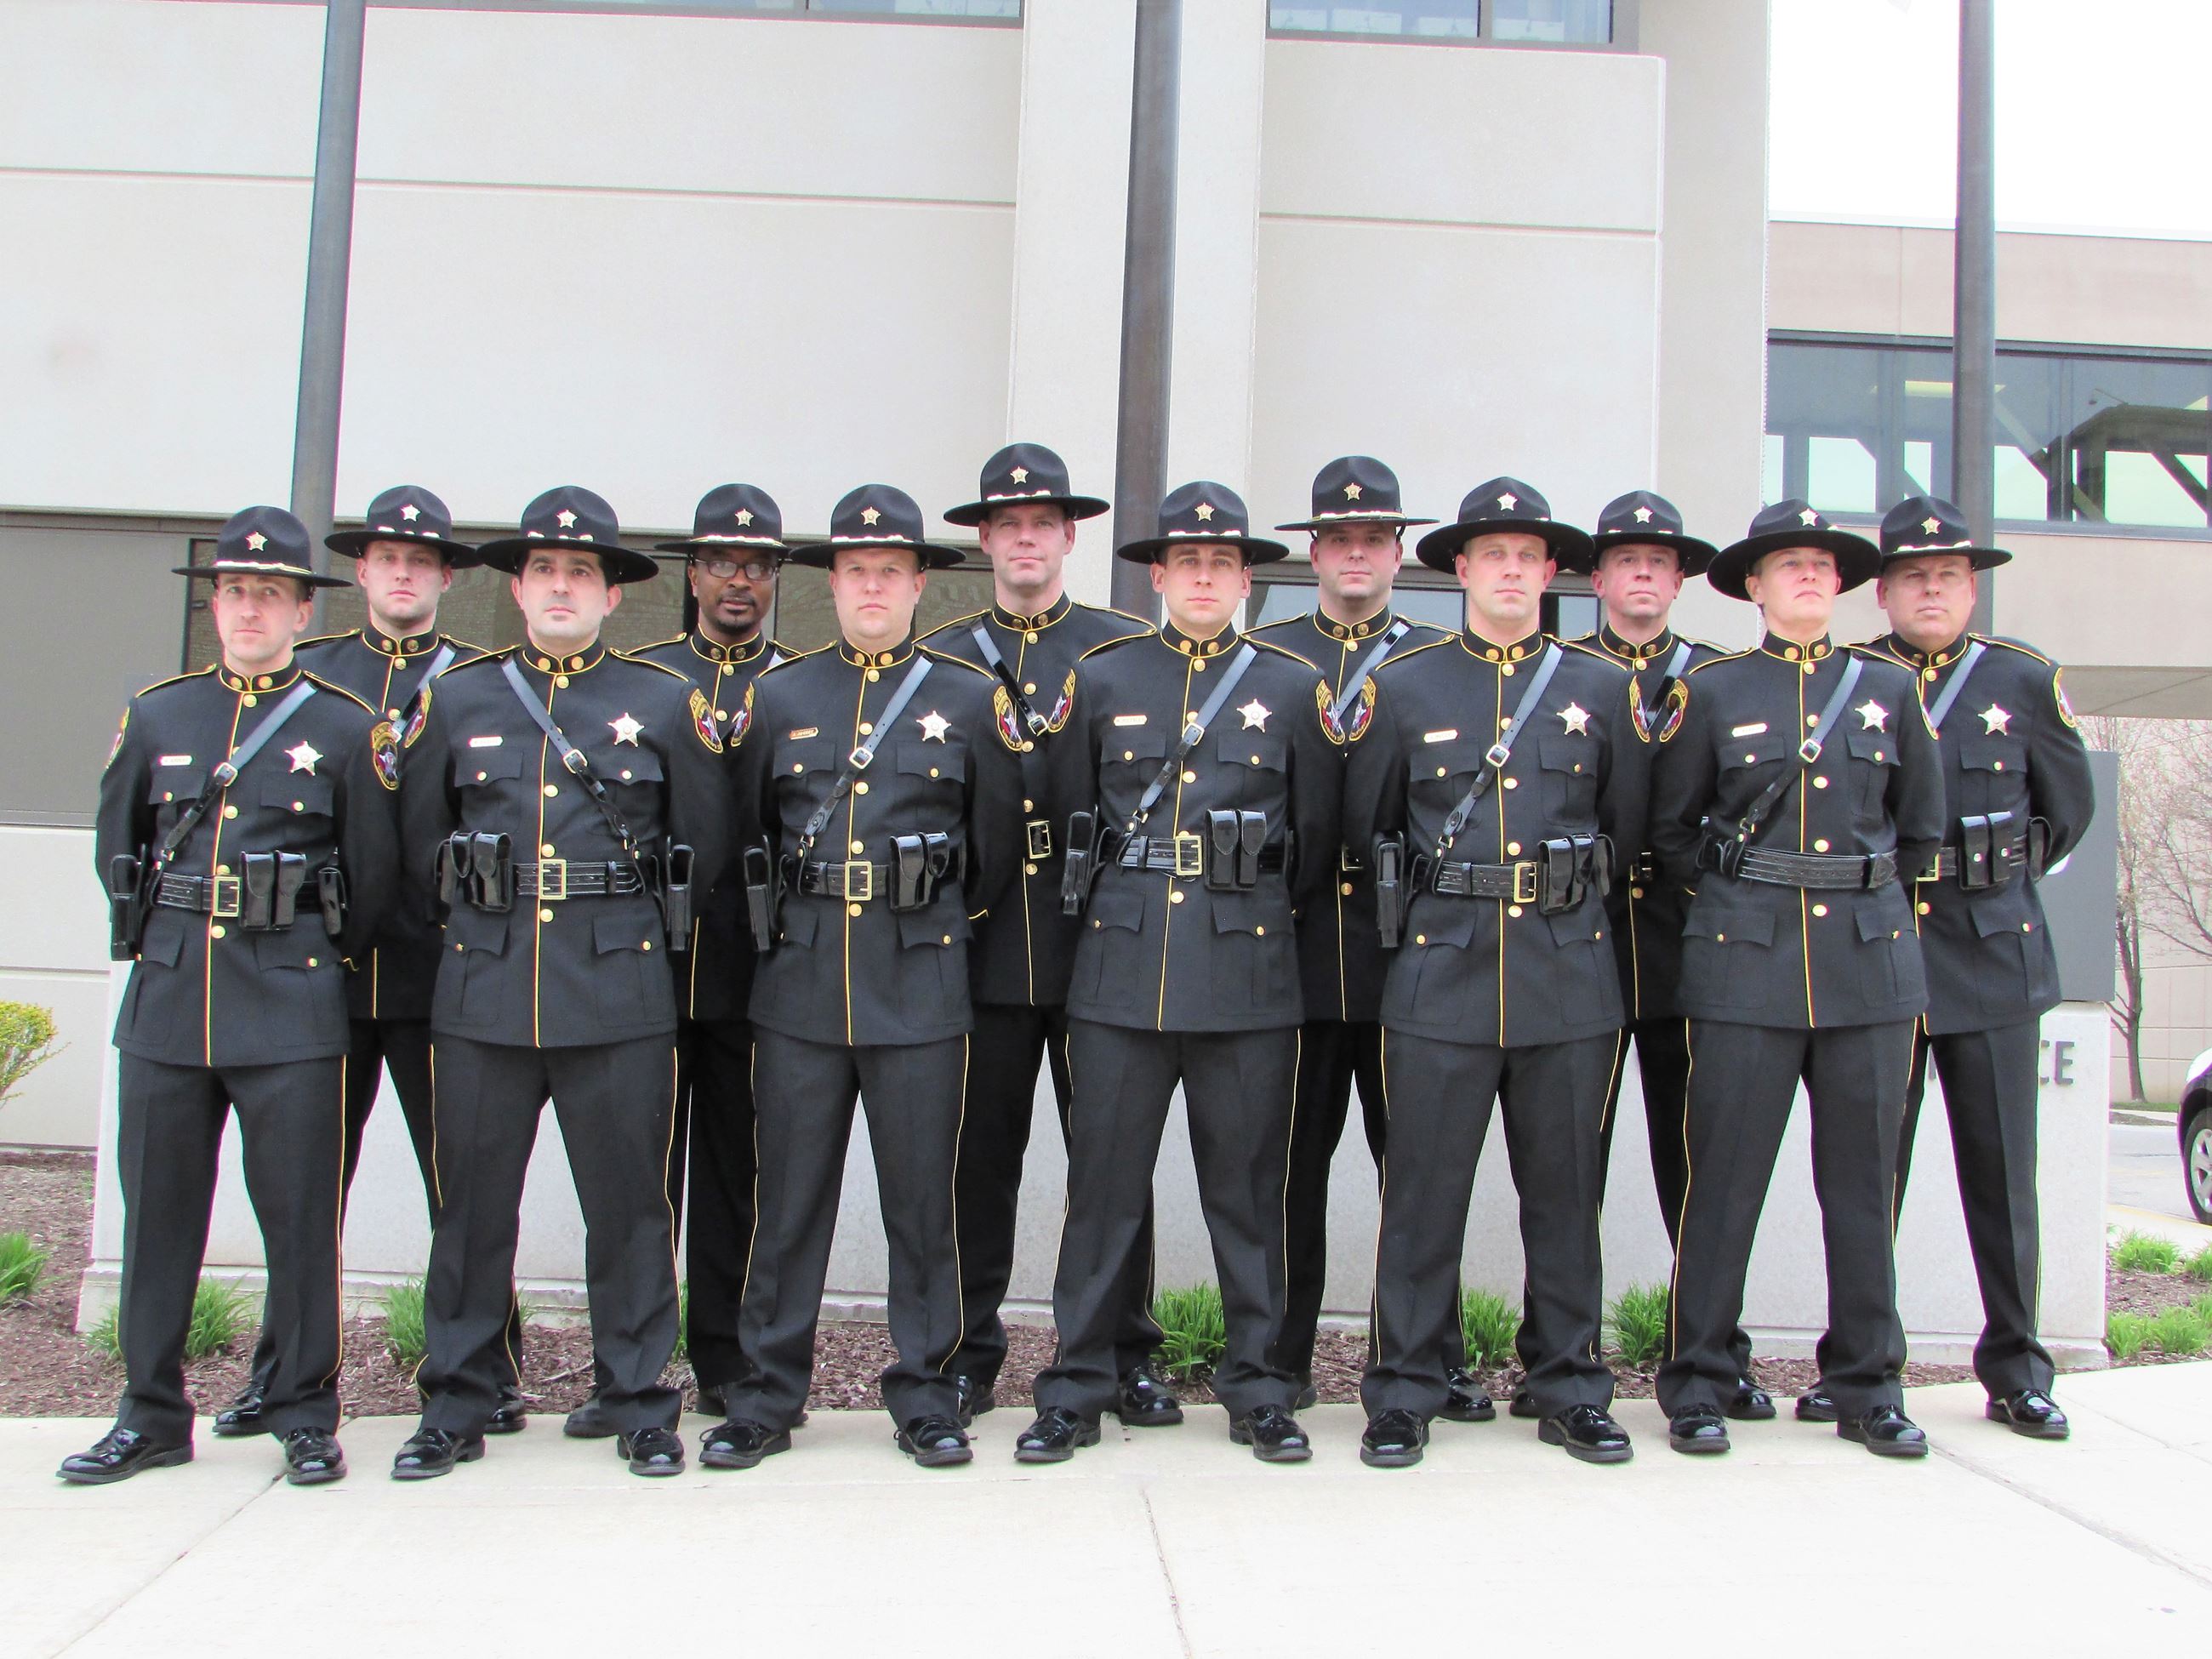 Group photo of KSD Honor Guard